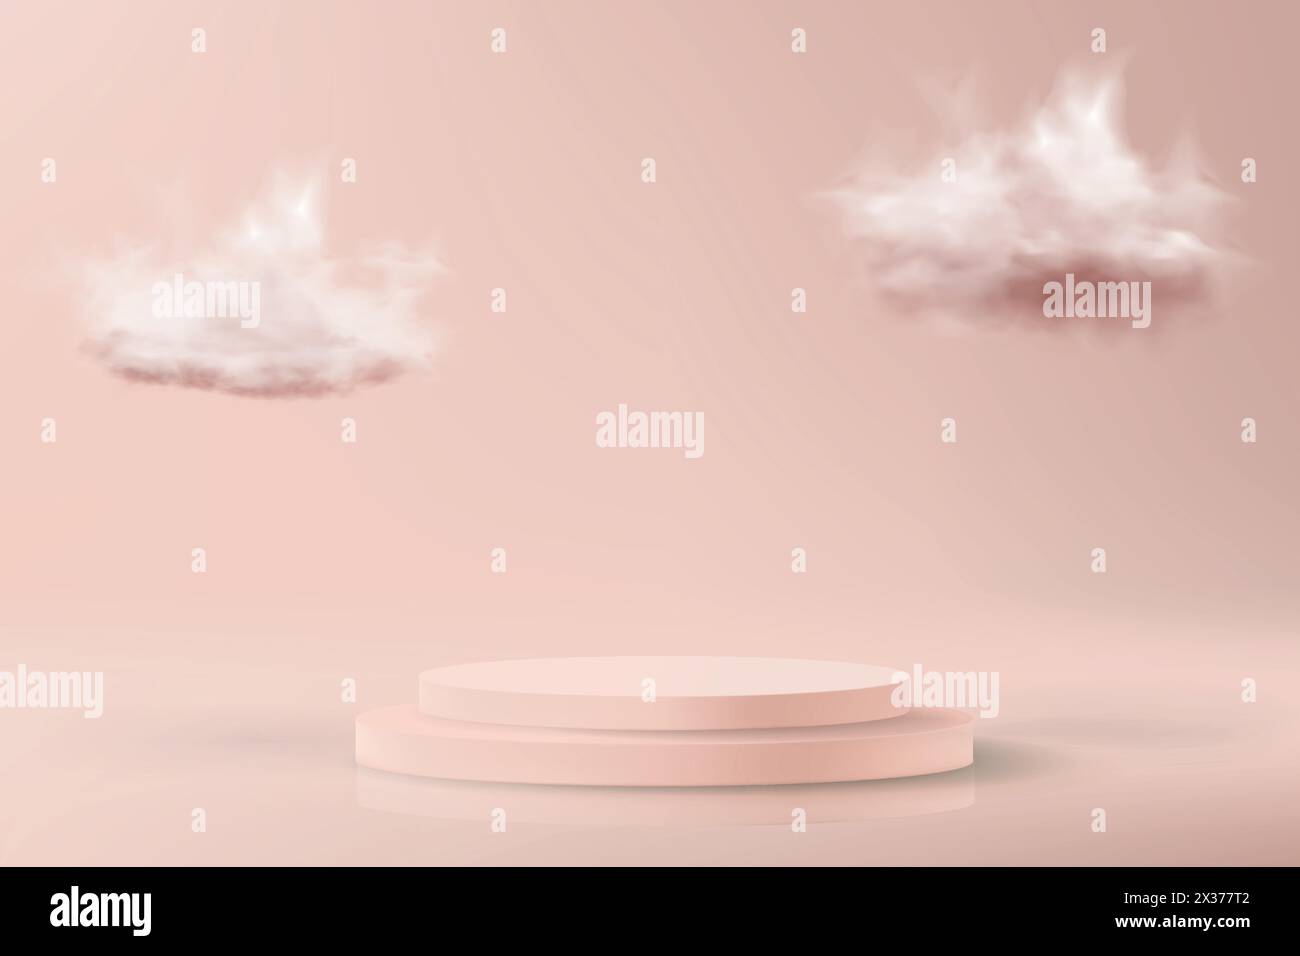 Fond 3d minimaliste dans des couleurs rose pastel. Simulez-vous avec un podium vide pour présenter un produit cosmétique. Illustration de Vecteur